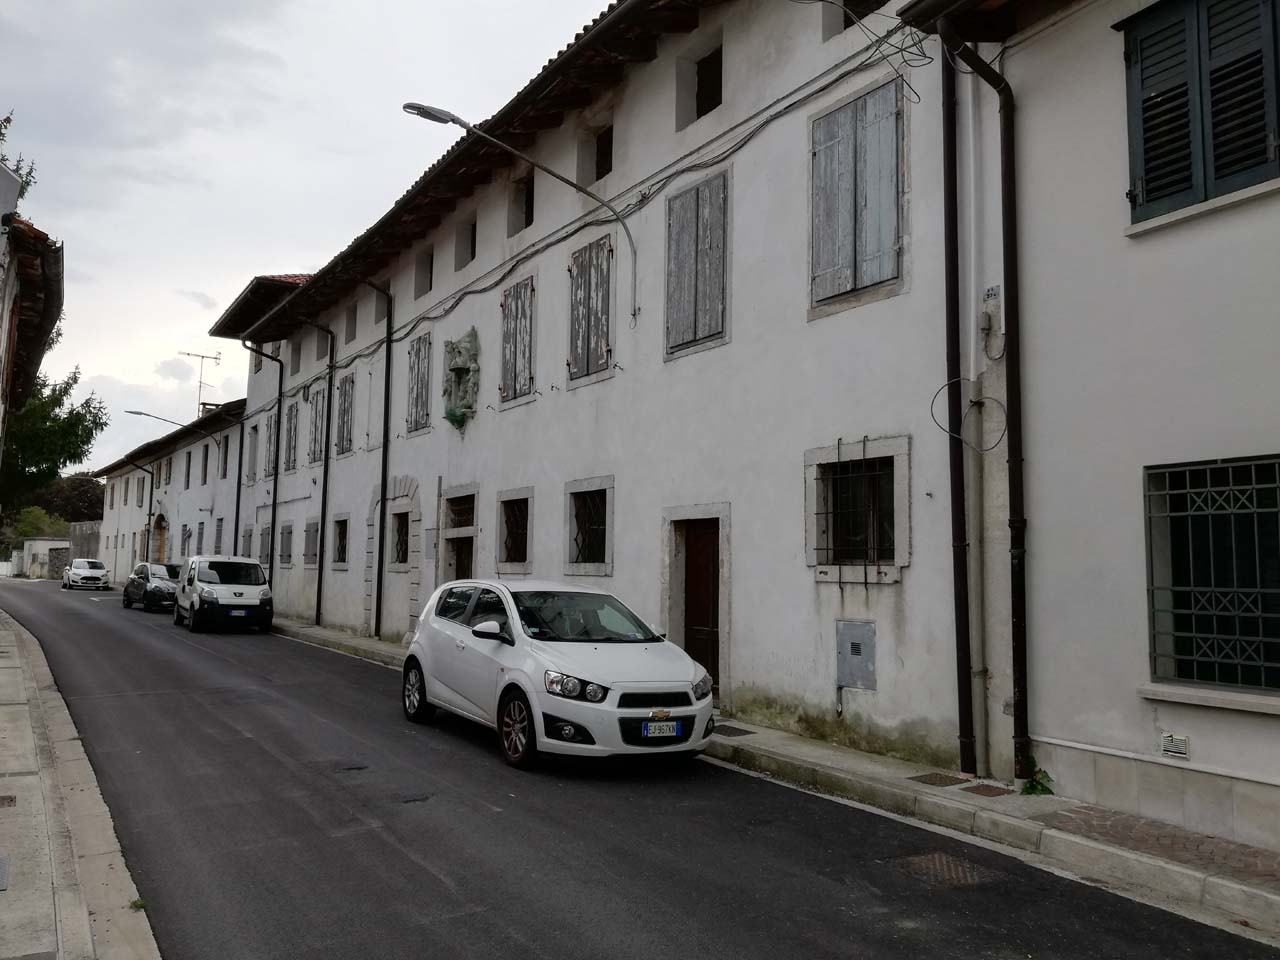 Casa Baselli (casa, in linea) - Mariano del Friuli (GO) 